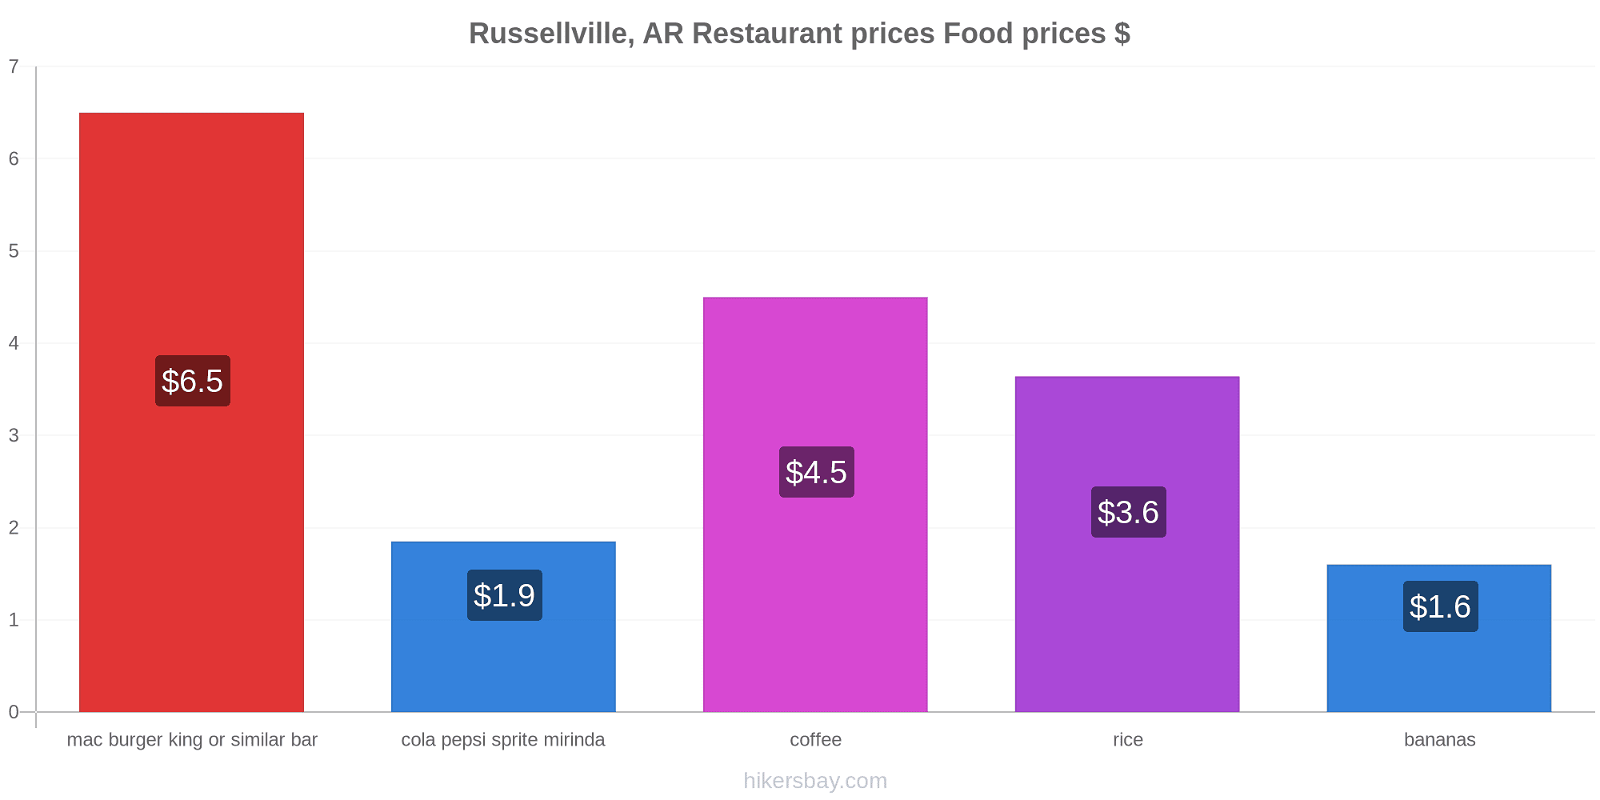 Russellville, AR price changes hikersbay.com